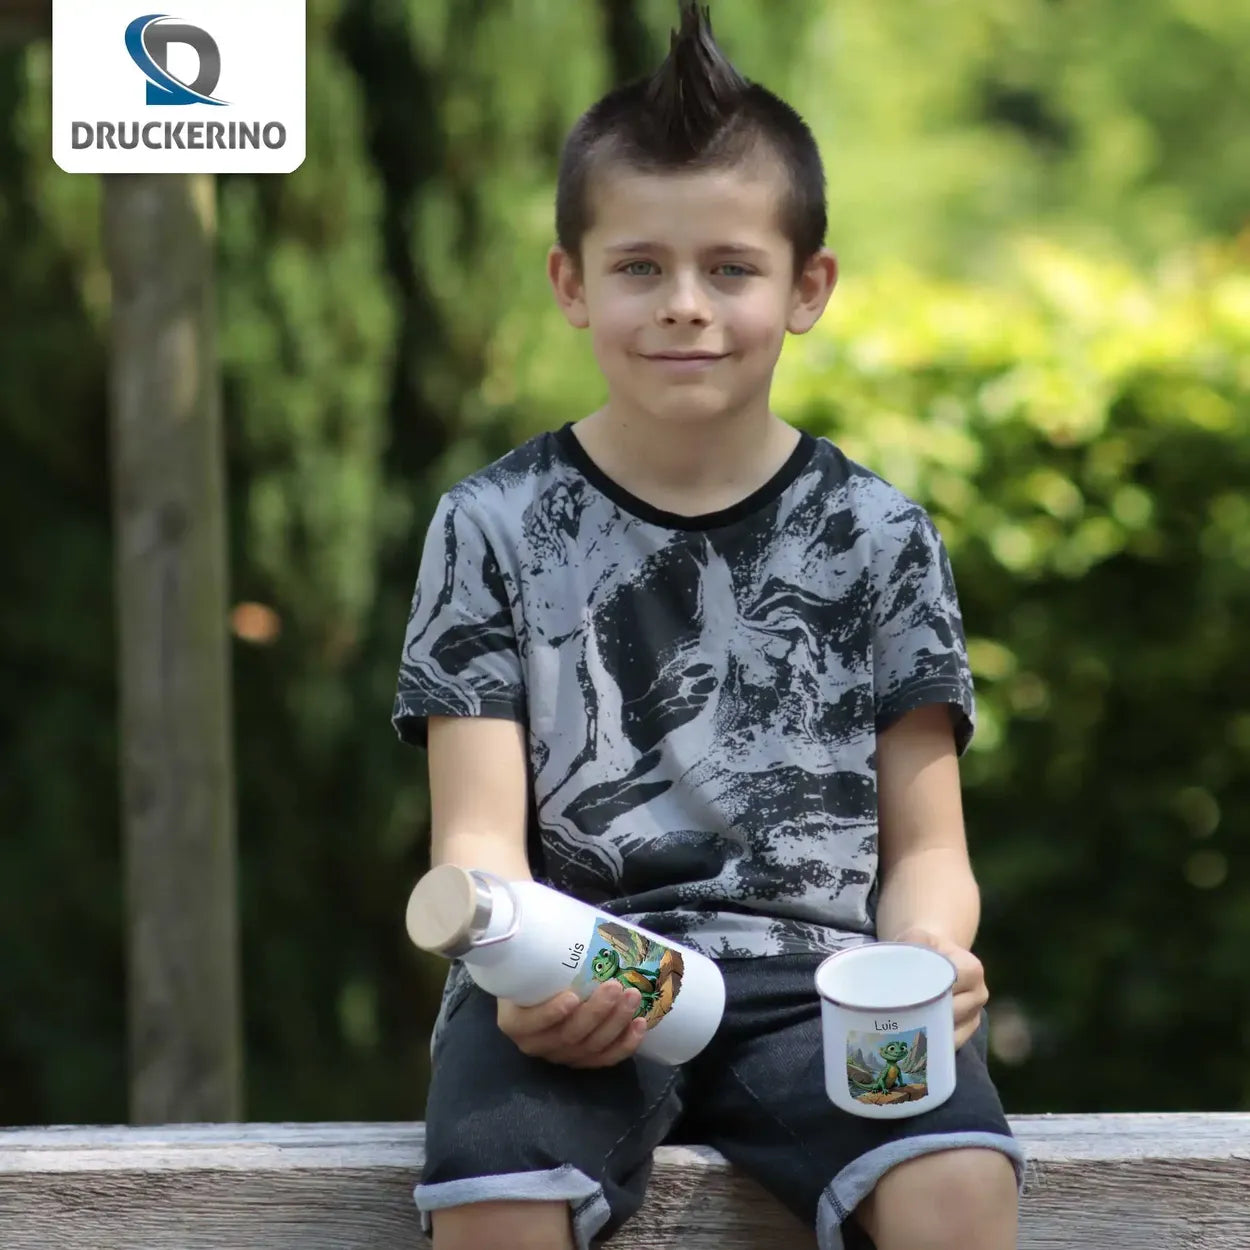 Abenteuerlustige Drachen Emaille Tasse für Kinder personalisiert Emailletasse Druckerino   